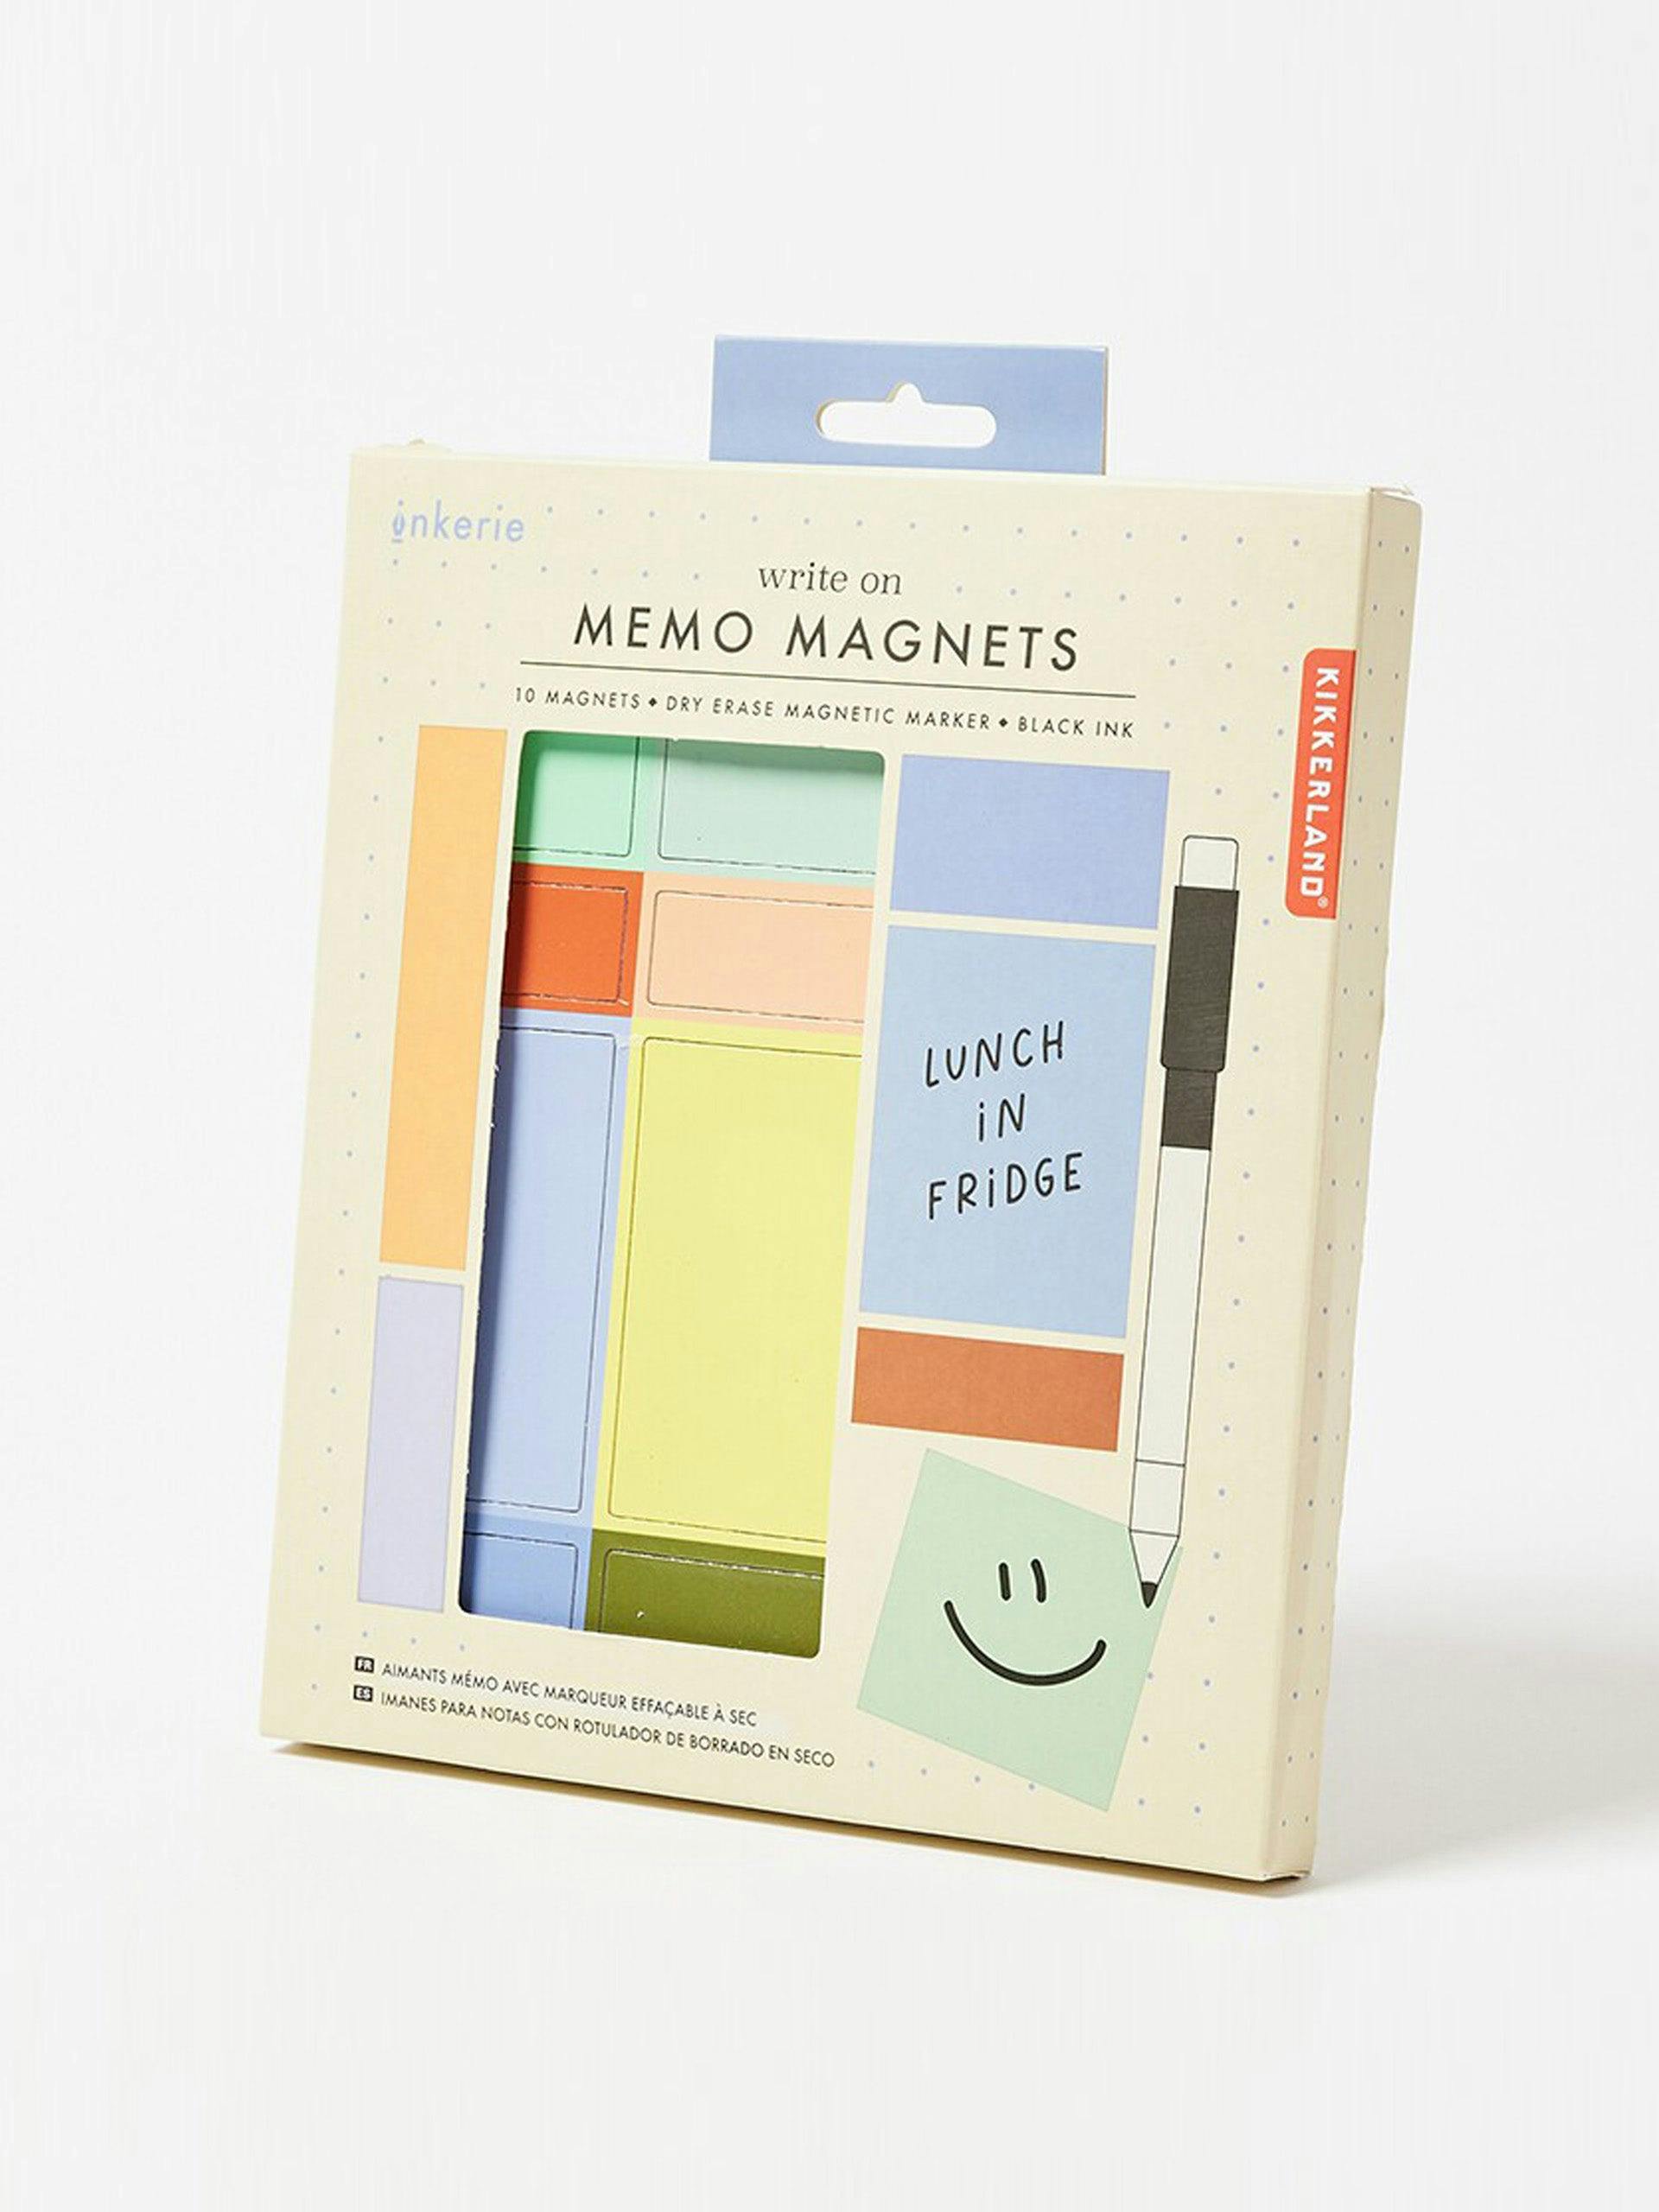 Memo magnets kit